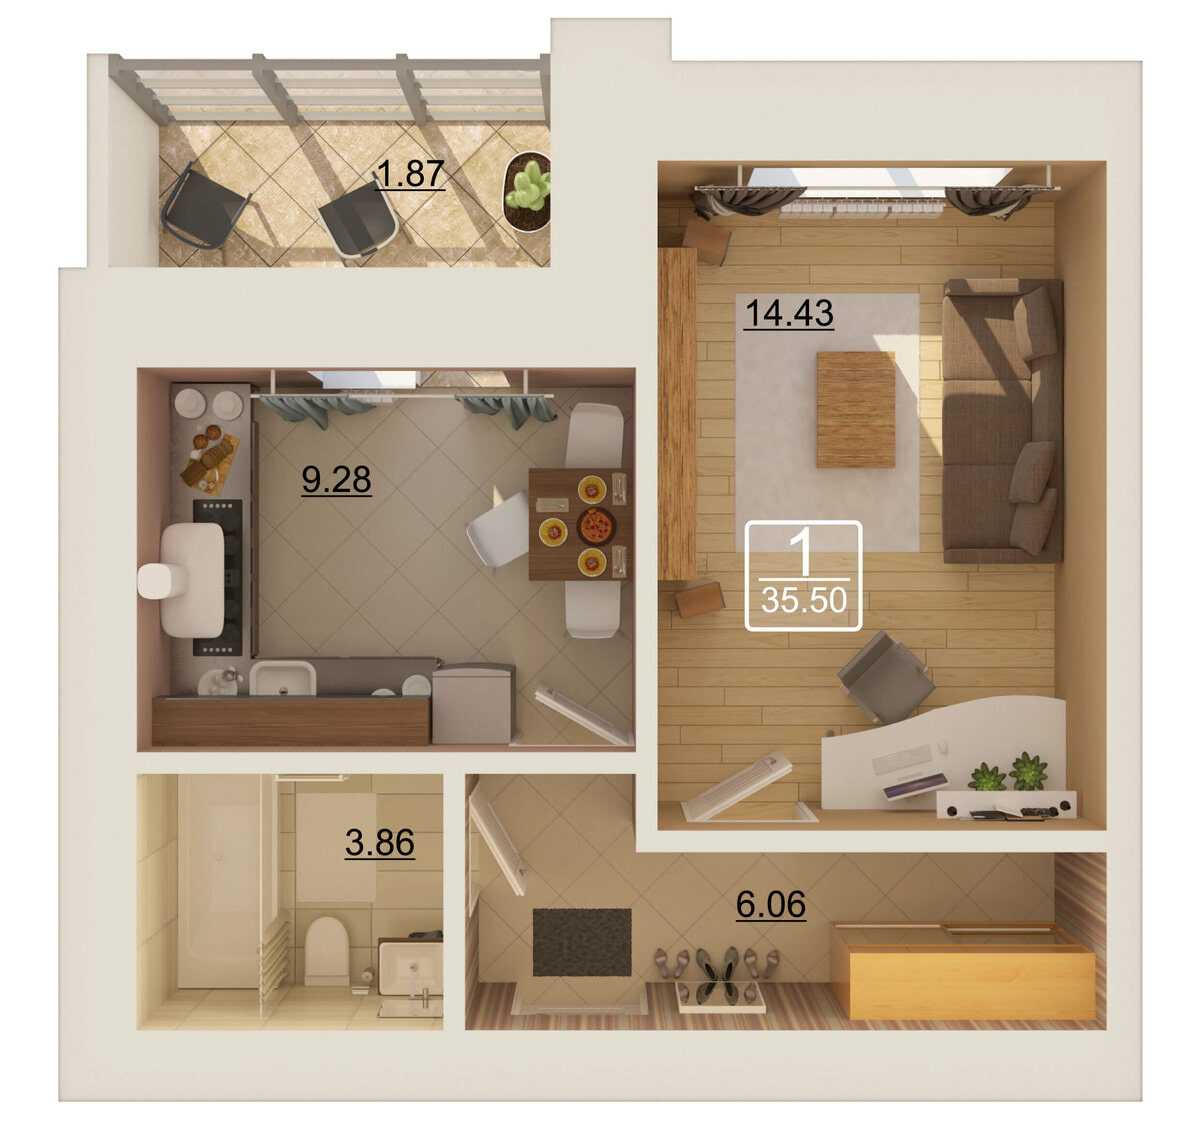 Квартира-студия 30 кв. м.: топ-120 фото и видео идей планировок и деления помещения на зоны. особенности формы квартиры при расстановке мебели и бытовой техники